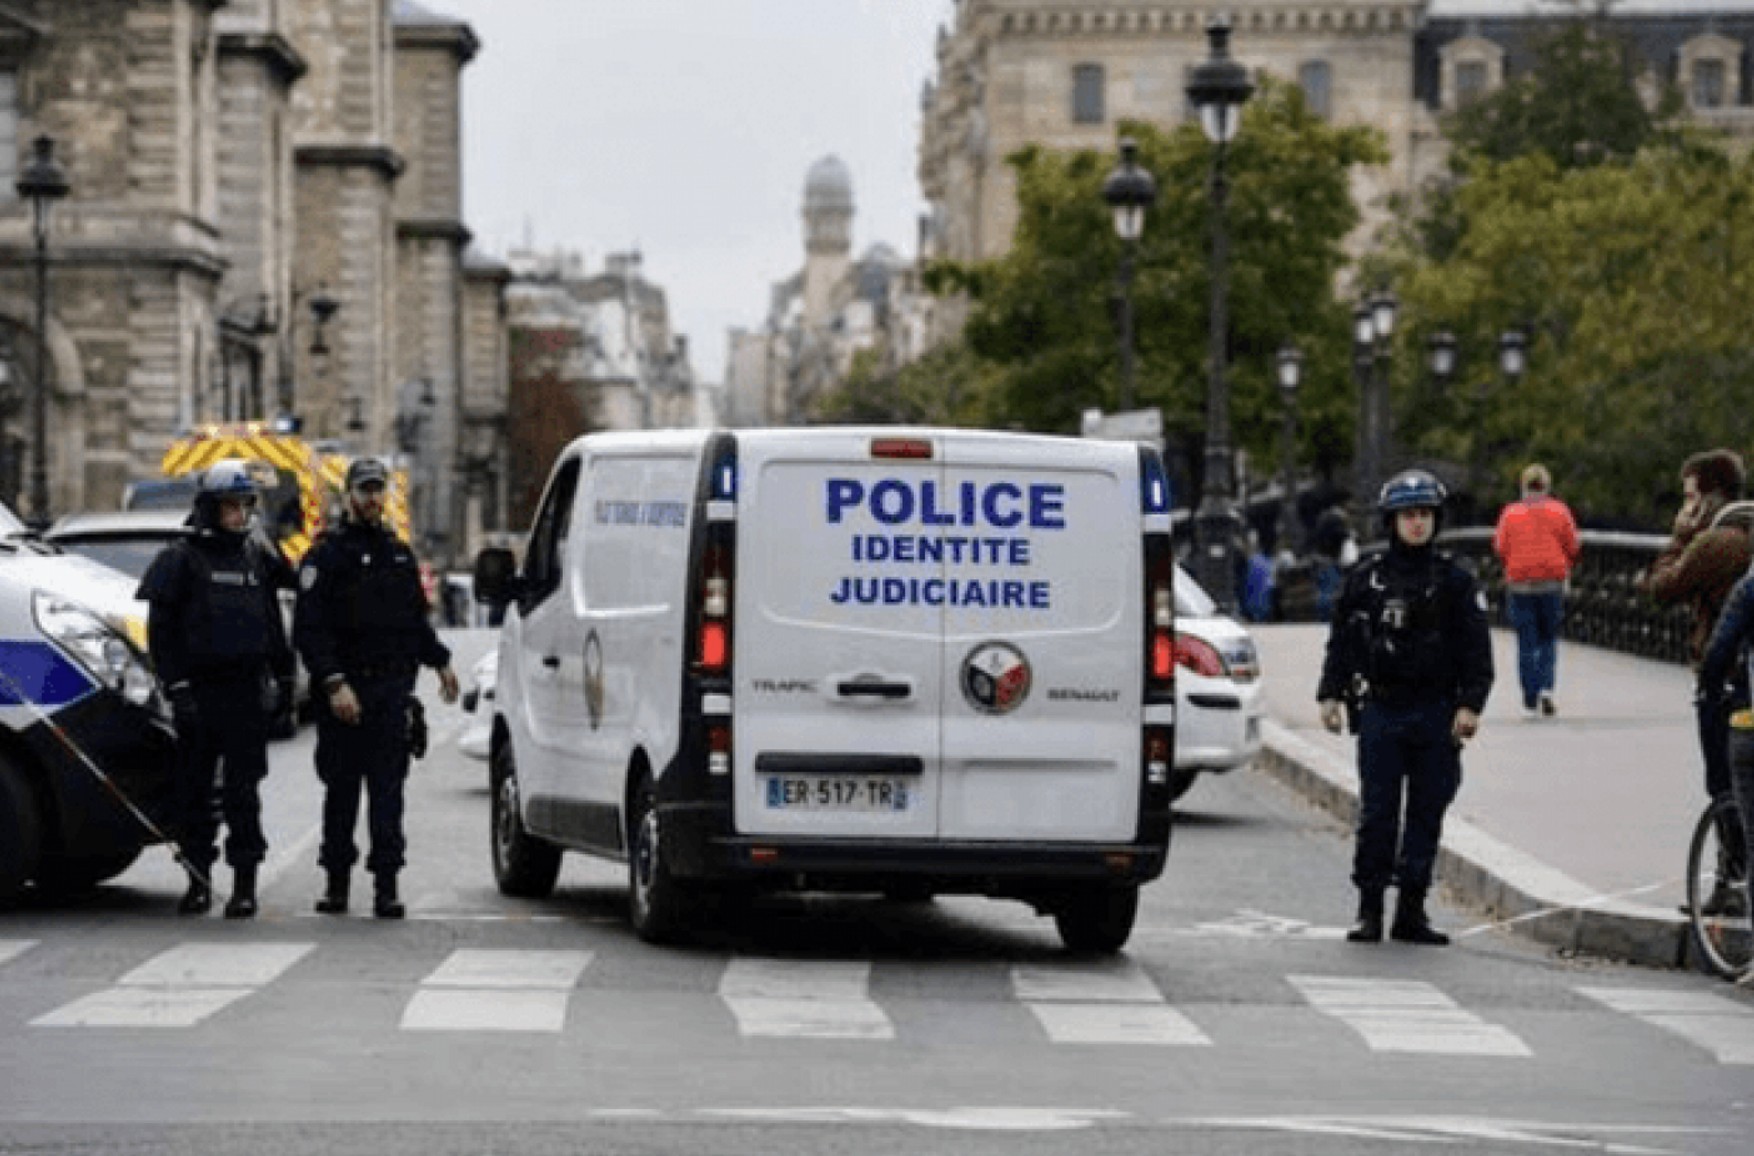 Понад 40 людей з піротехнікою напали на поліцейську дільницю під Парижем - відео